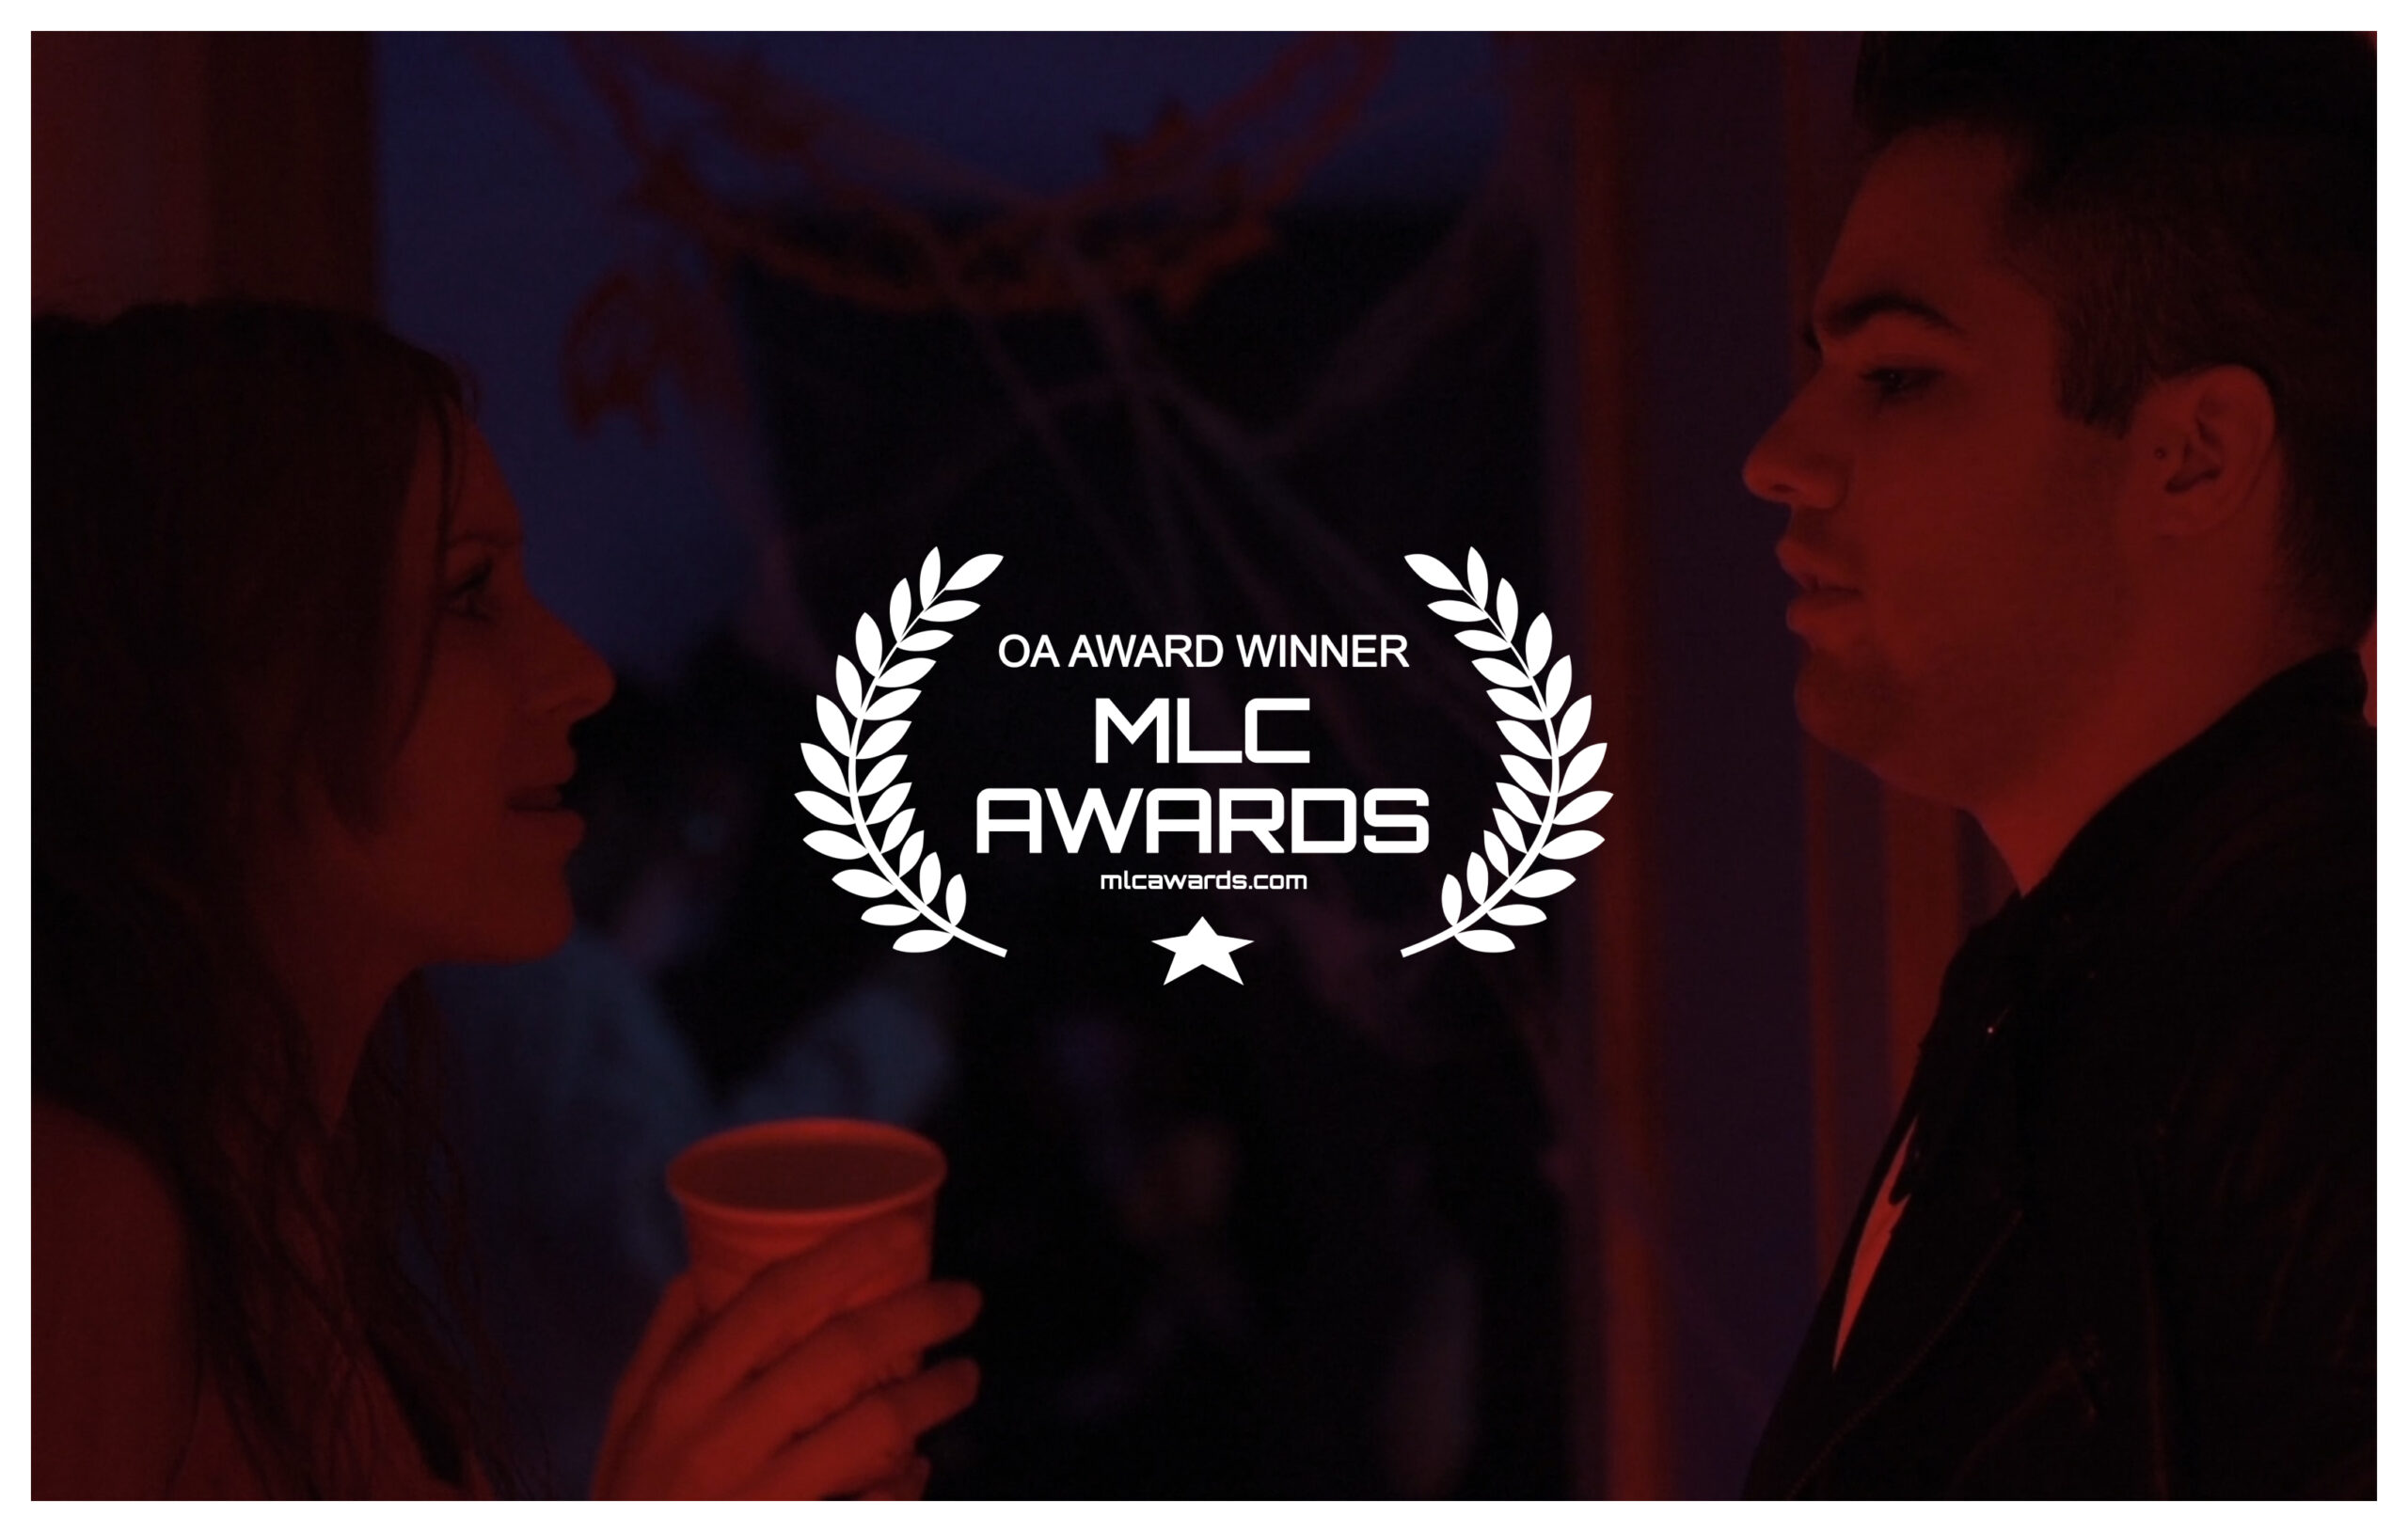 Quemad a la bruja destacado en MLC Awards